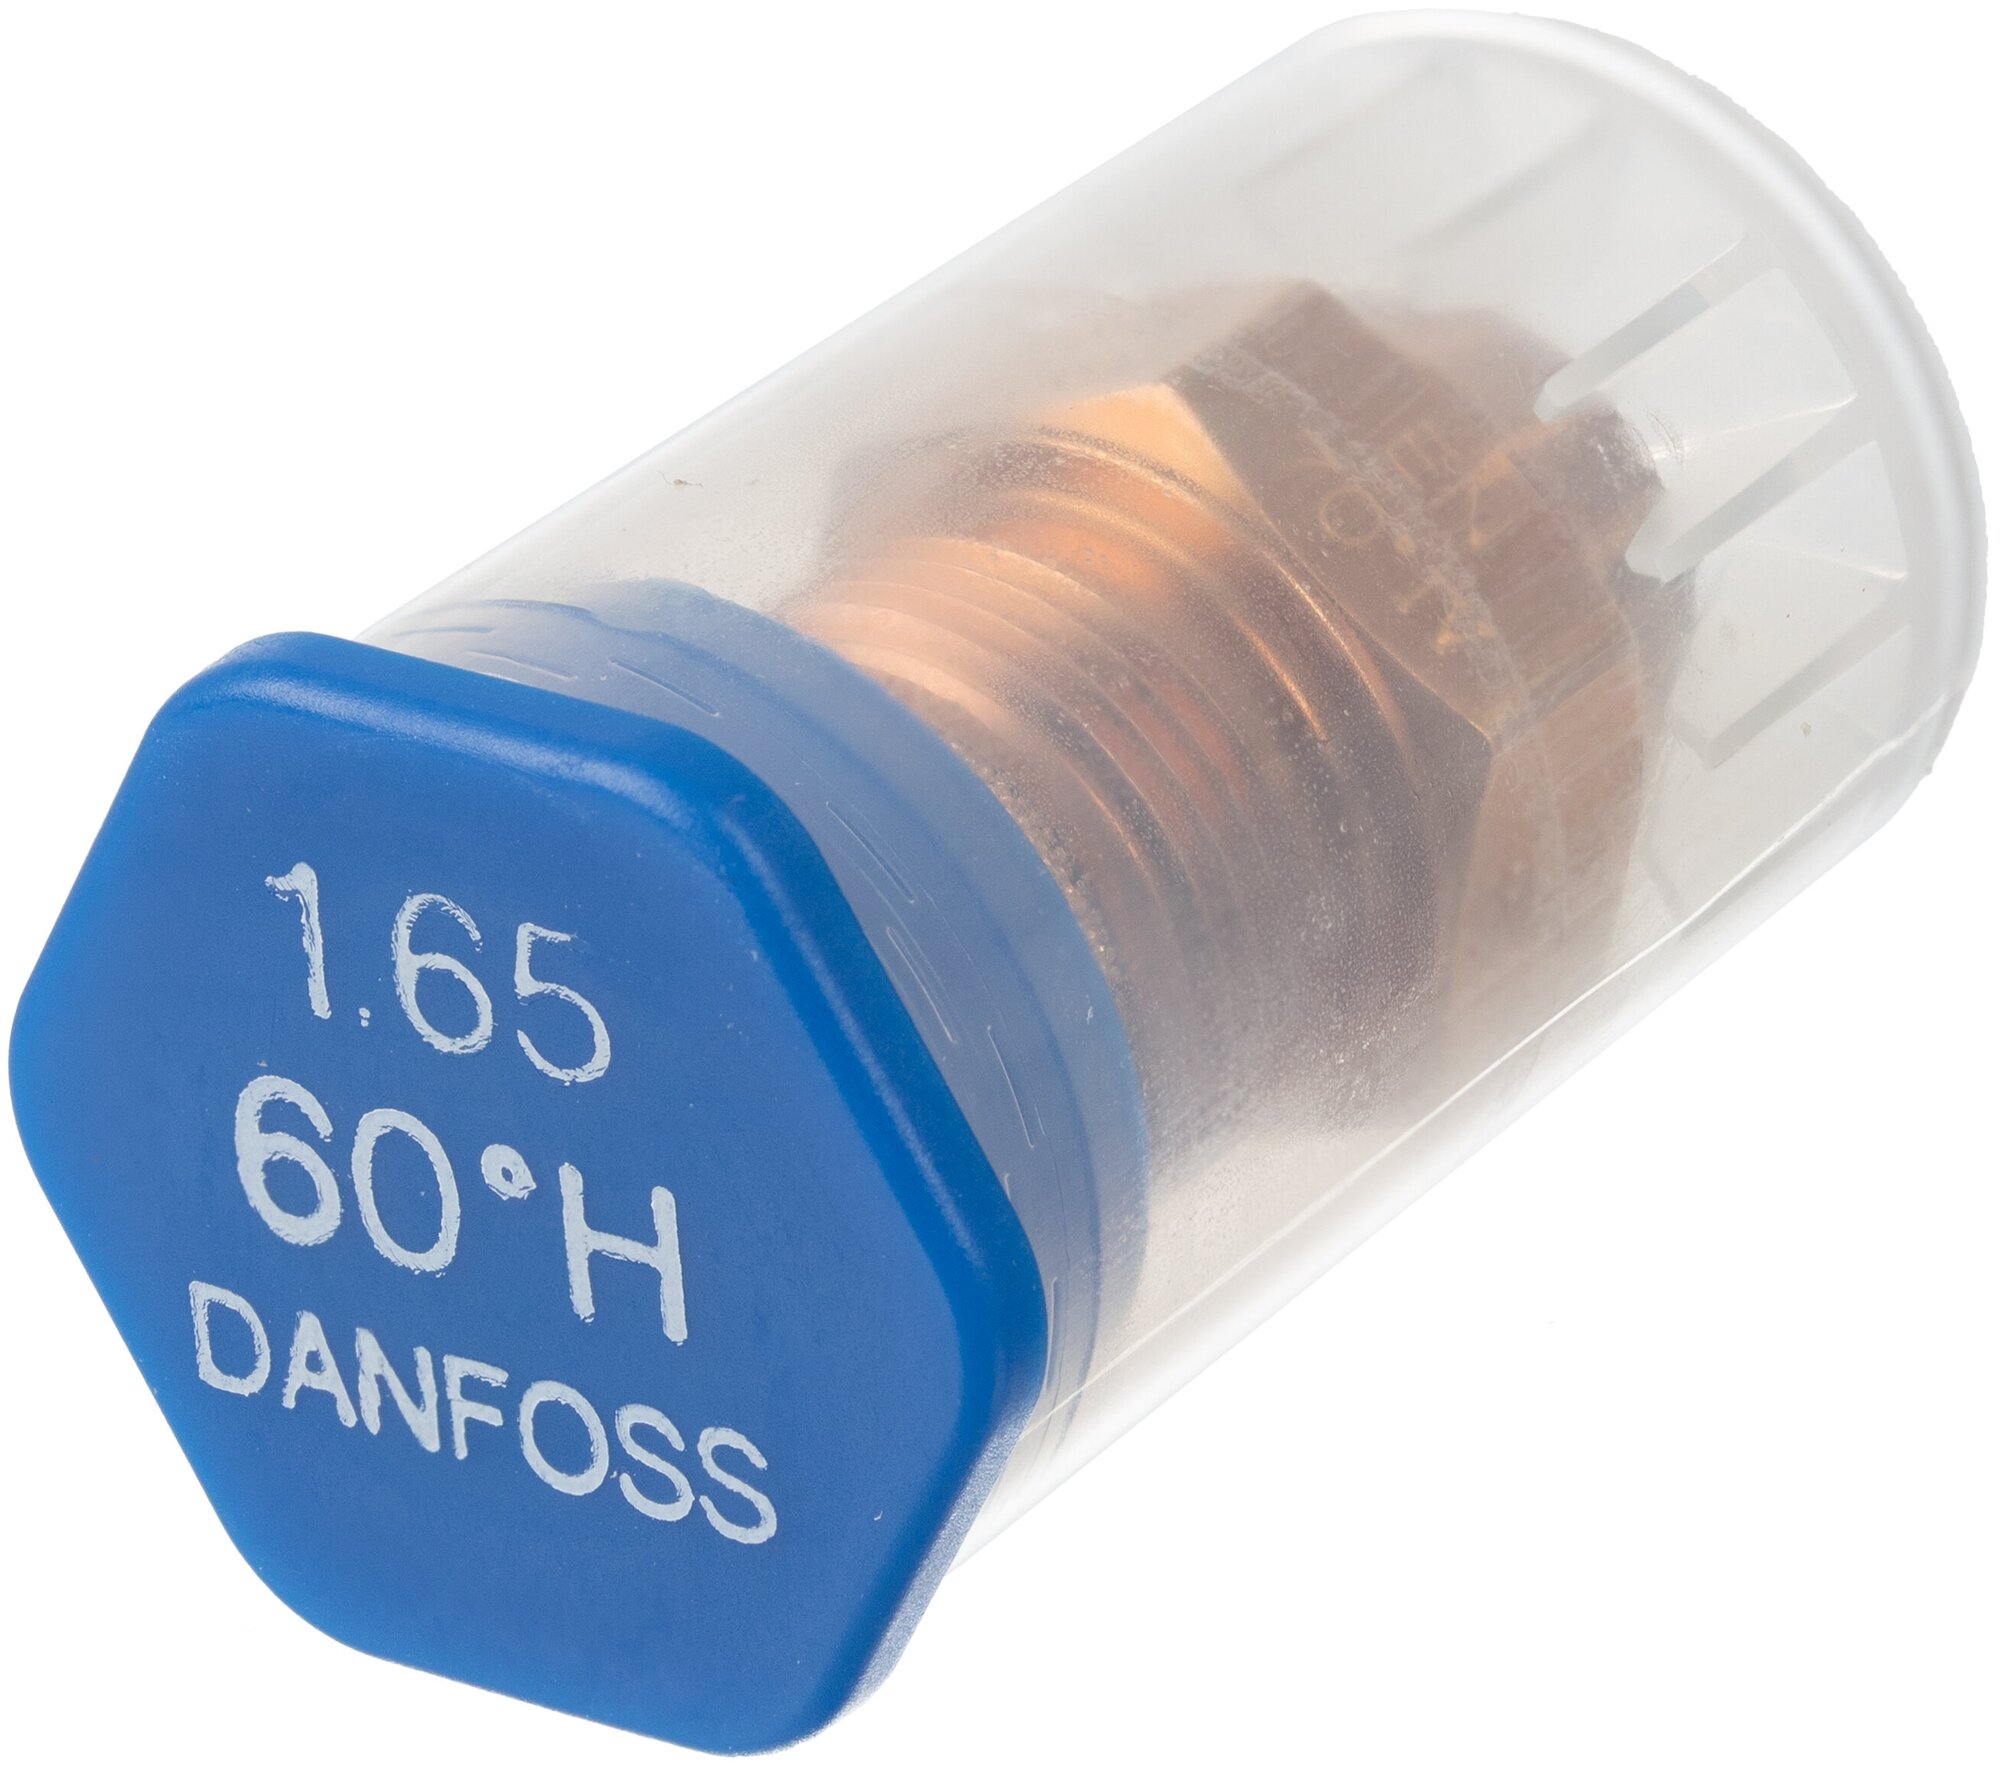 Форсунка для дизельного топлива DANFOSS 1.65 gal/h (6.08 kg/h) * 60 Н, арт. 030H6929